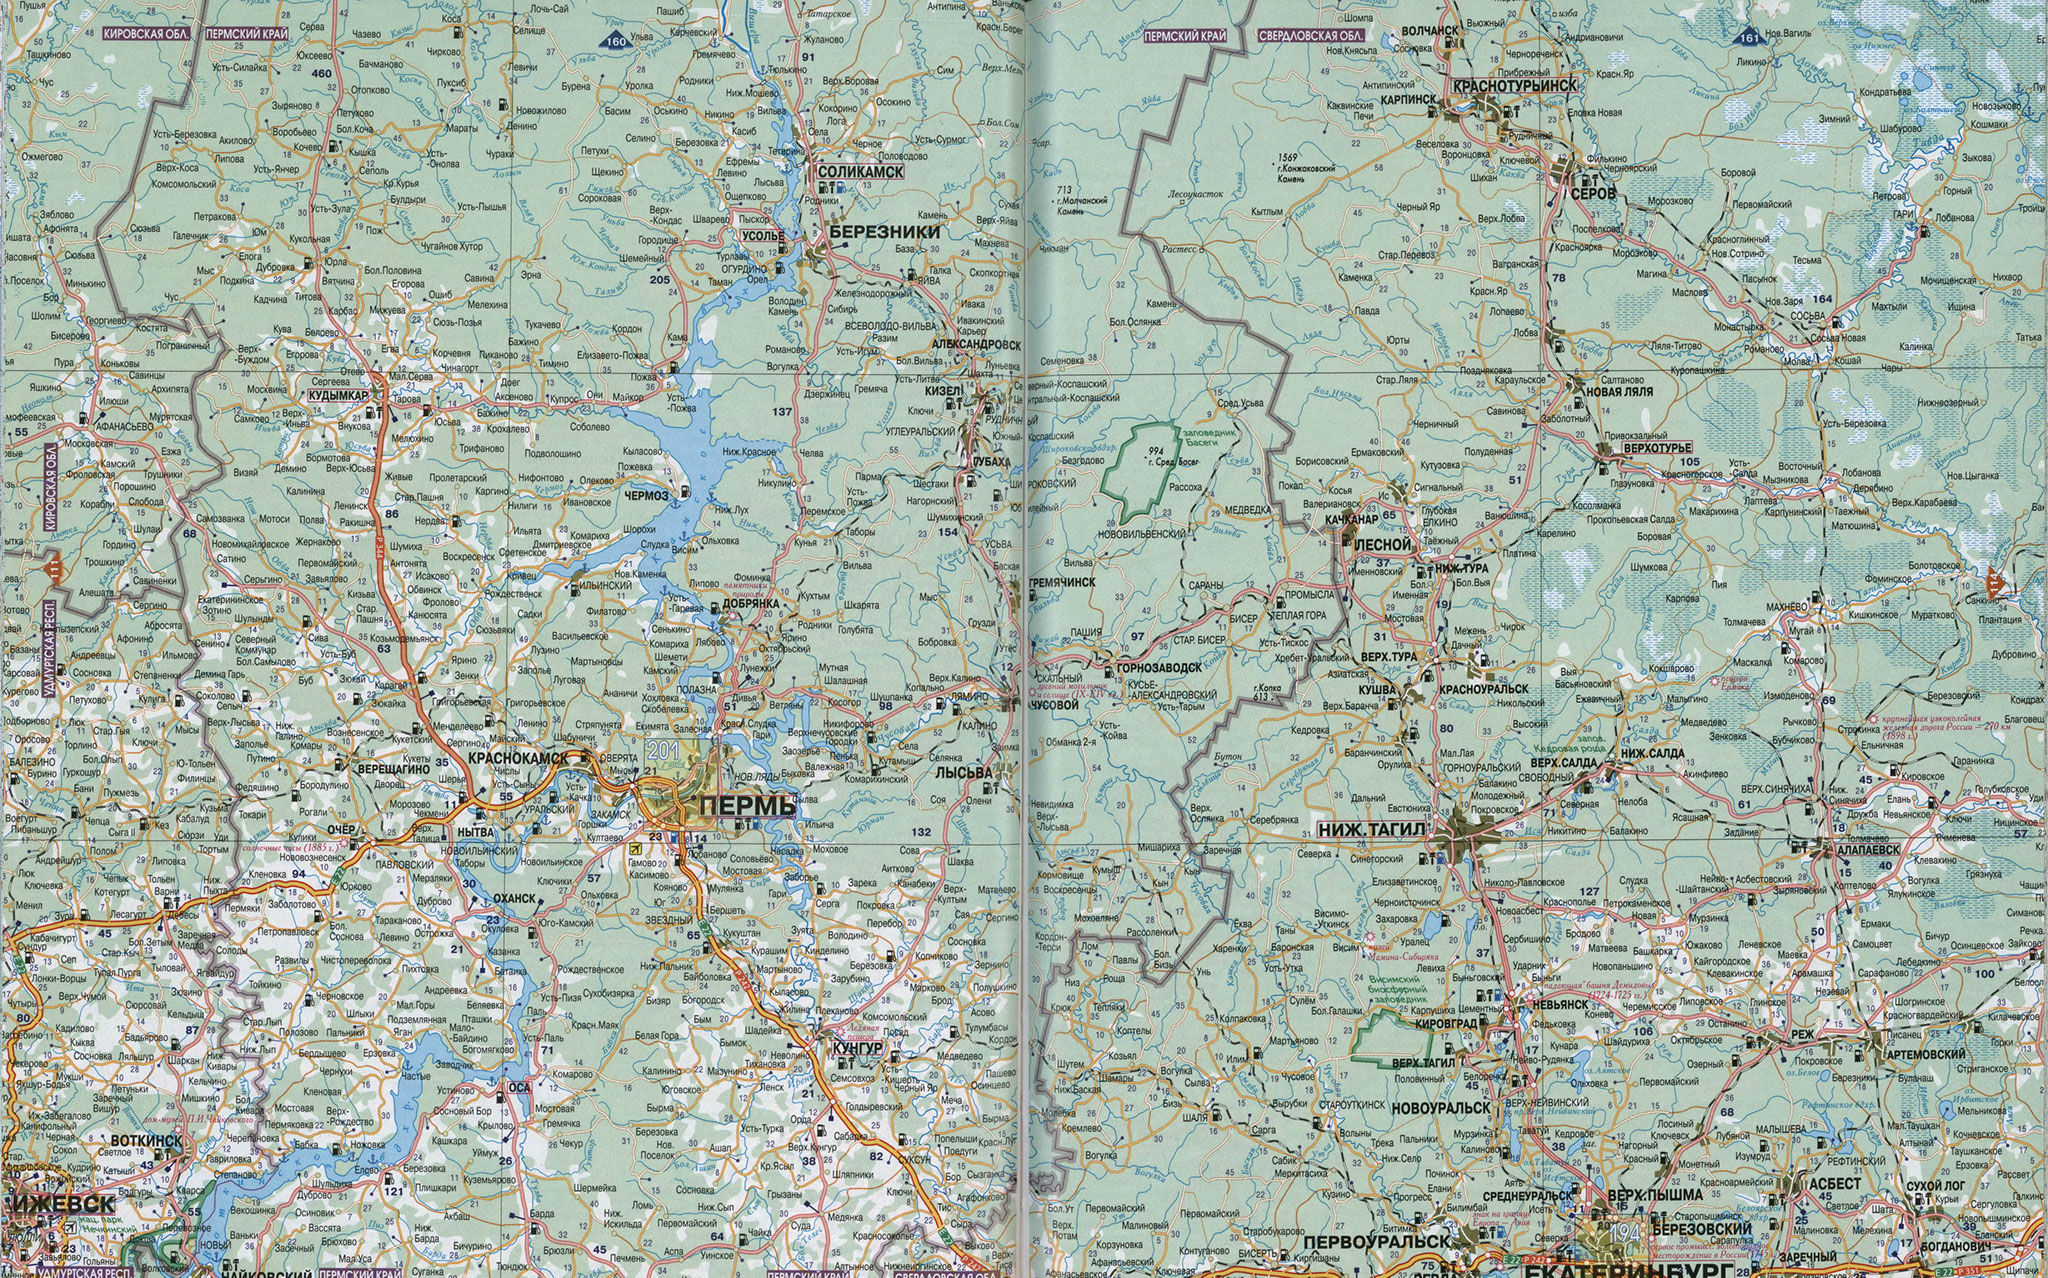 Карта Свердловской области